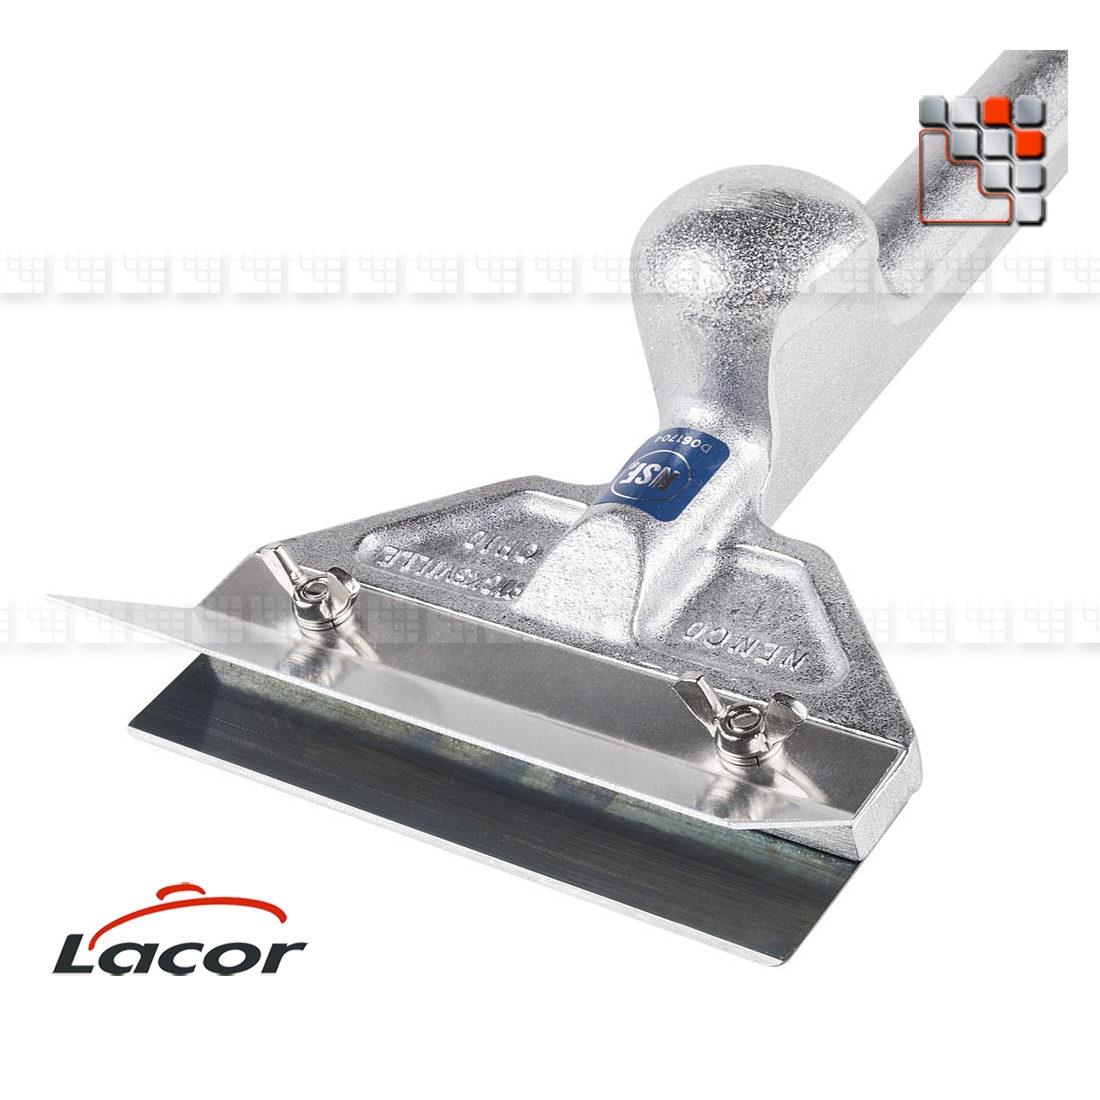 Lame pour Racloir 67034 HSS Lacor L10-R67034A LACOR® Ustensiles de Cuisine